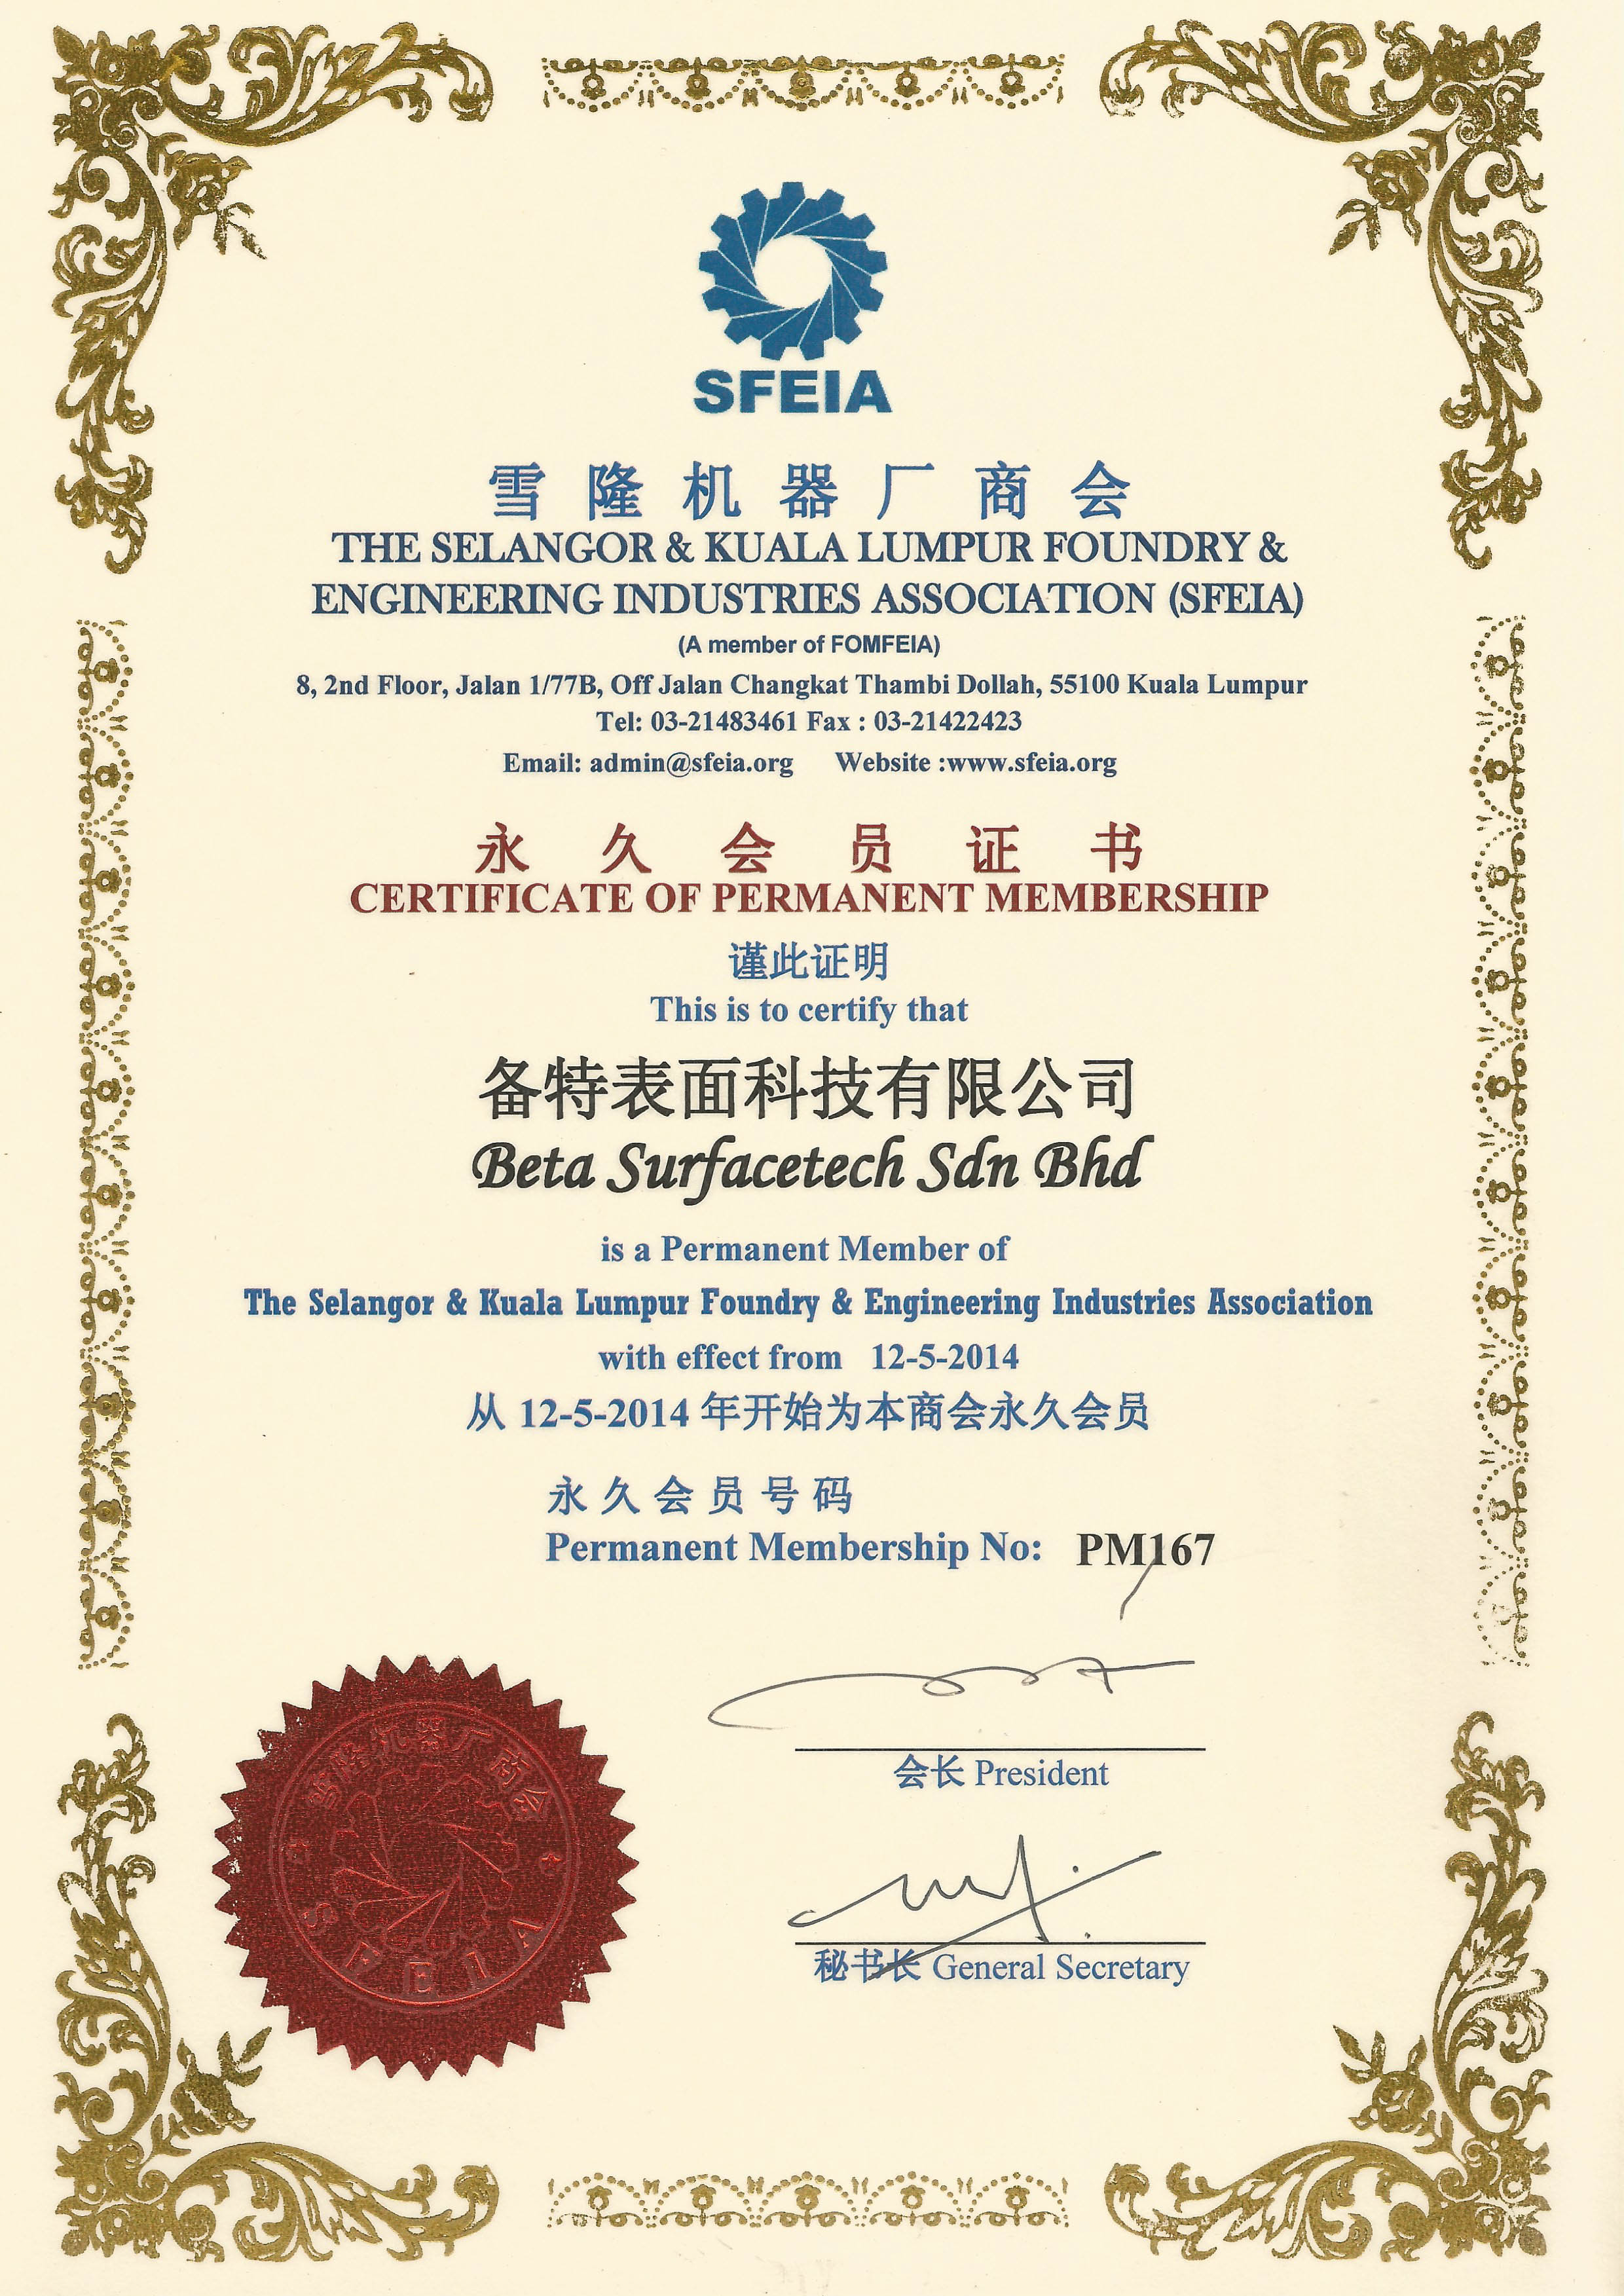 SFEIA Certificate